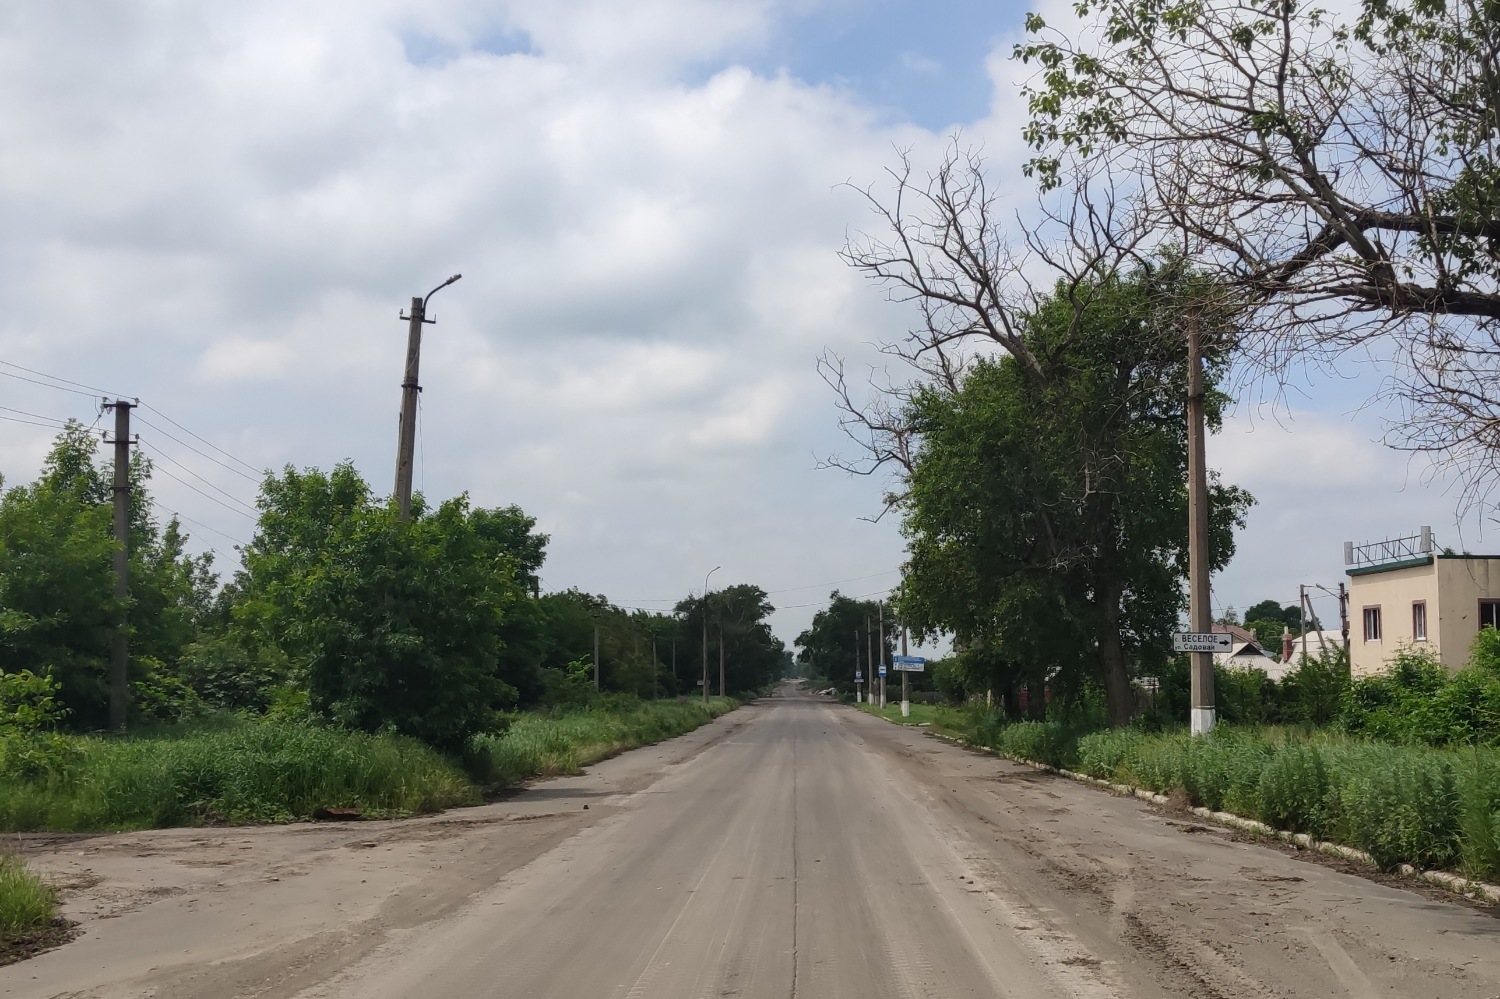 Донецк — Повреждения от военных действий; Донецк — Разные троллейбусные фотографии